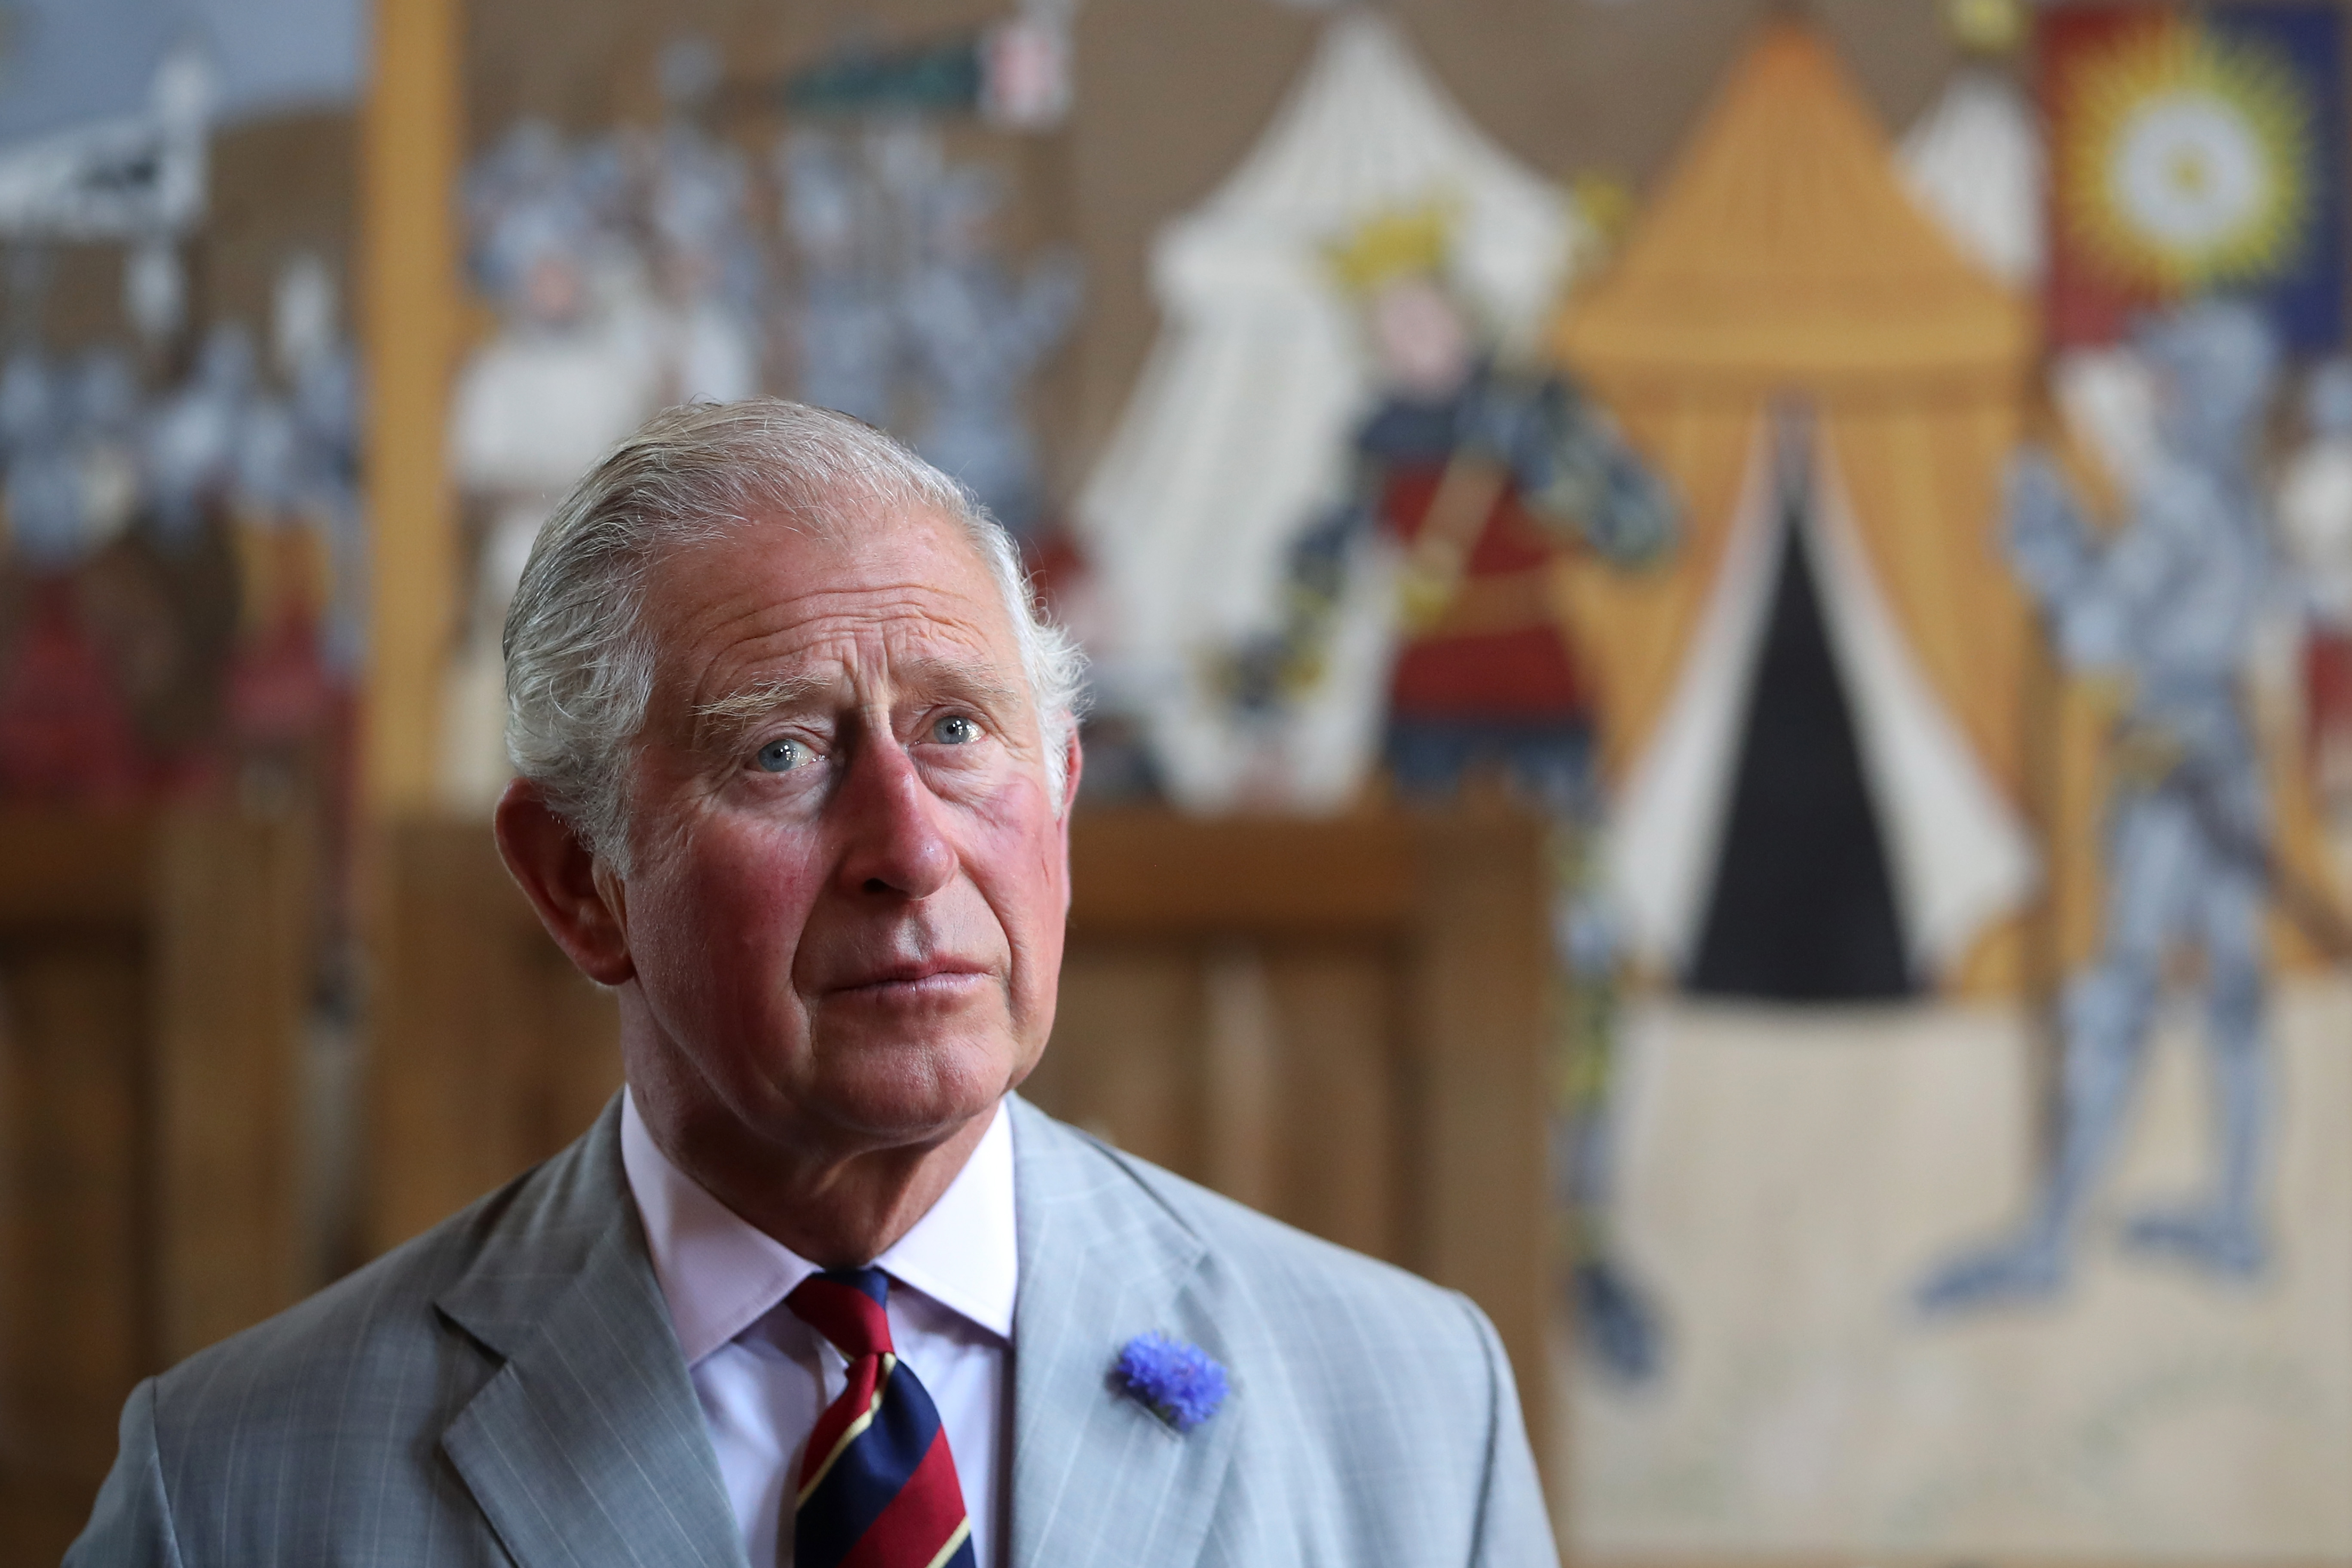 König Charles, besucht Tretower Court am 5. Juli 2018 in Crickhowell, Wales | Quelle: Getty Images